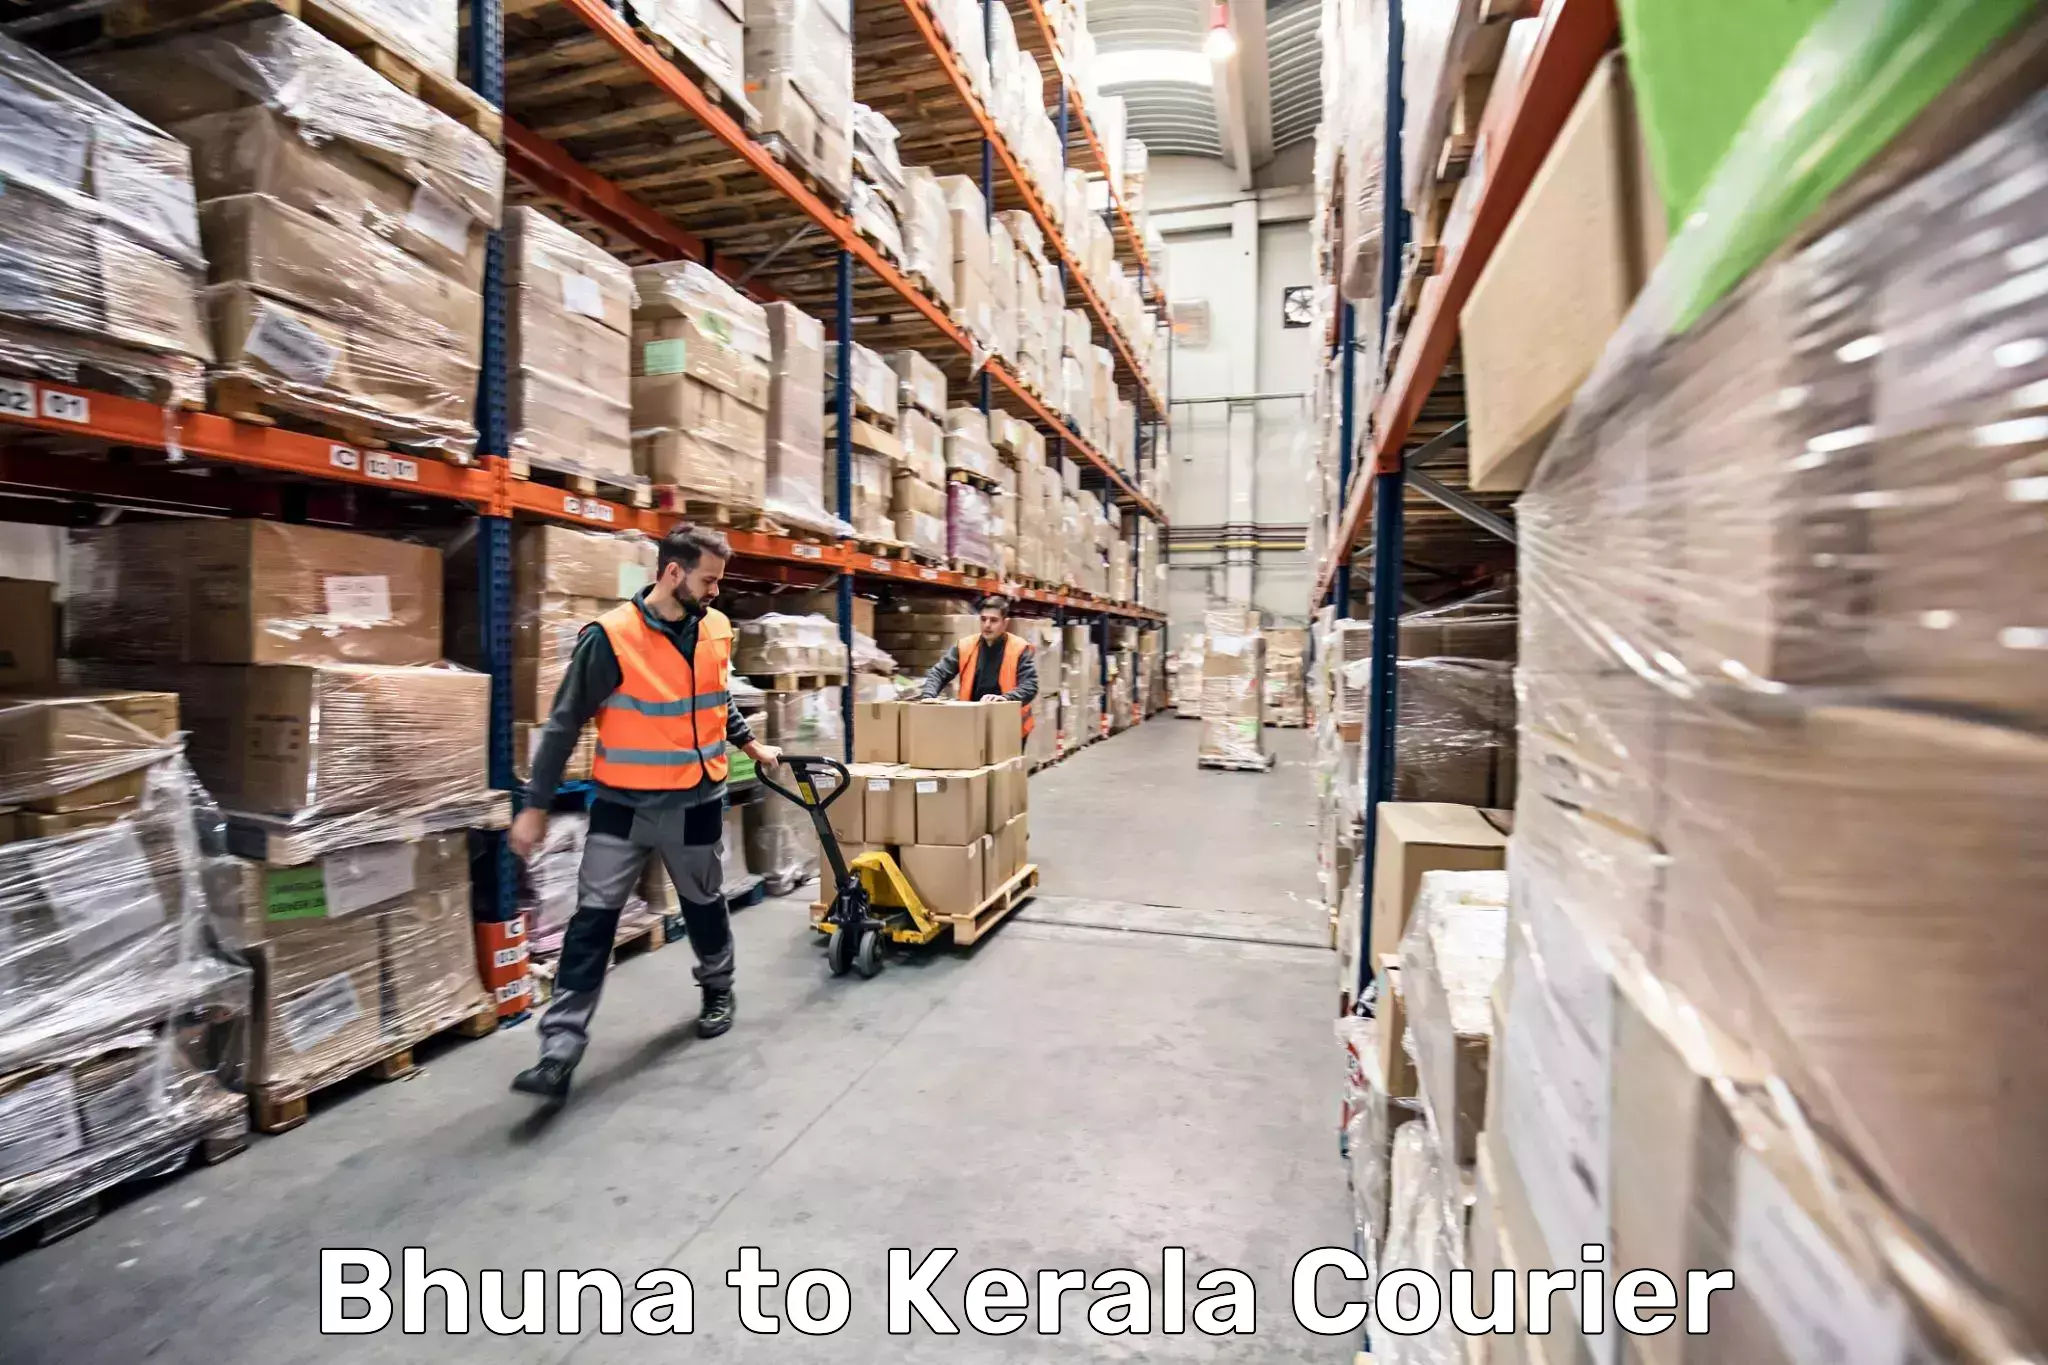 Baggage transport scheduler Bhuna to Kerala